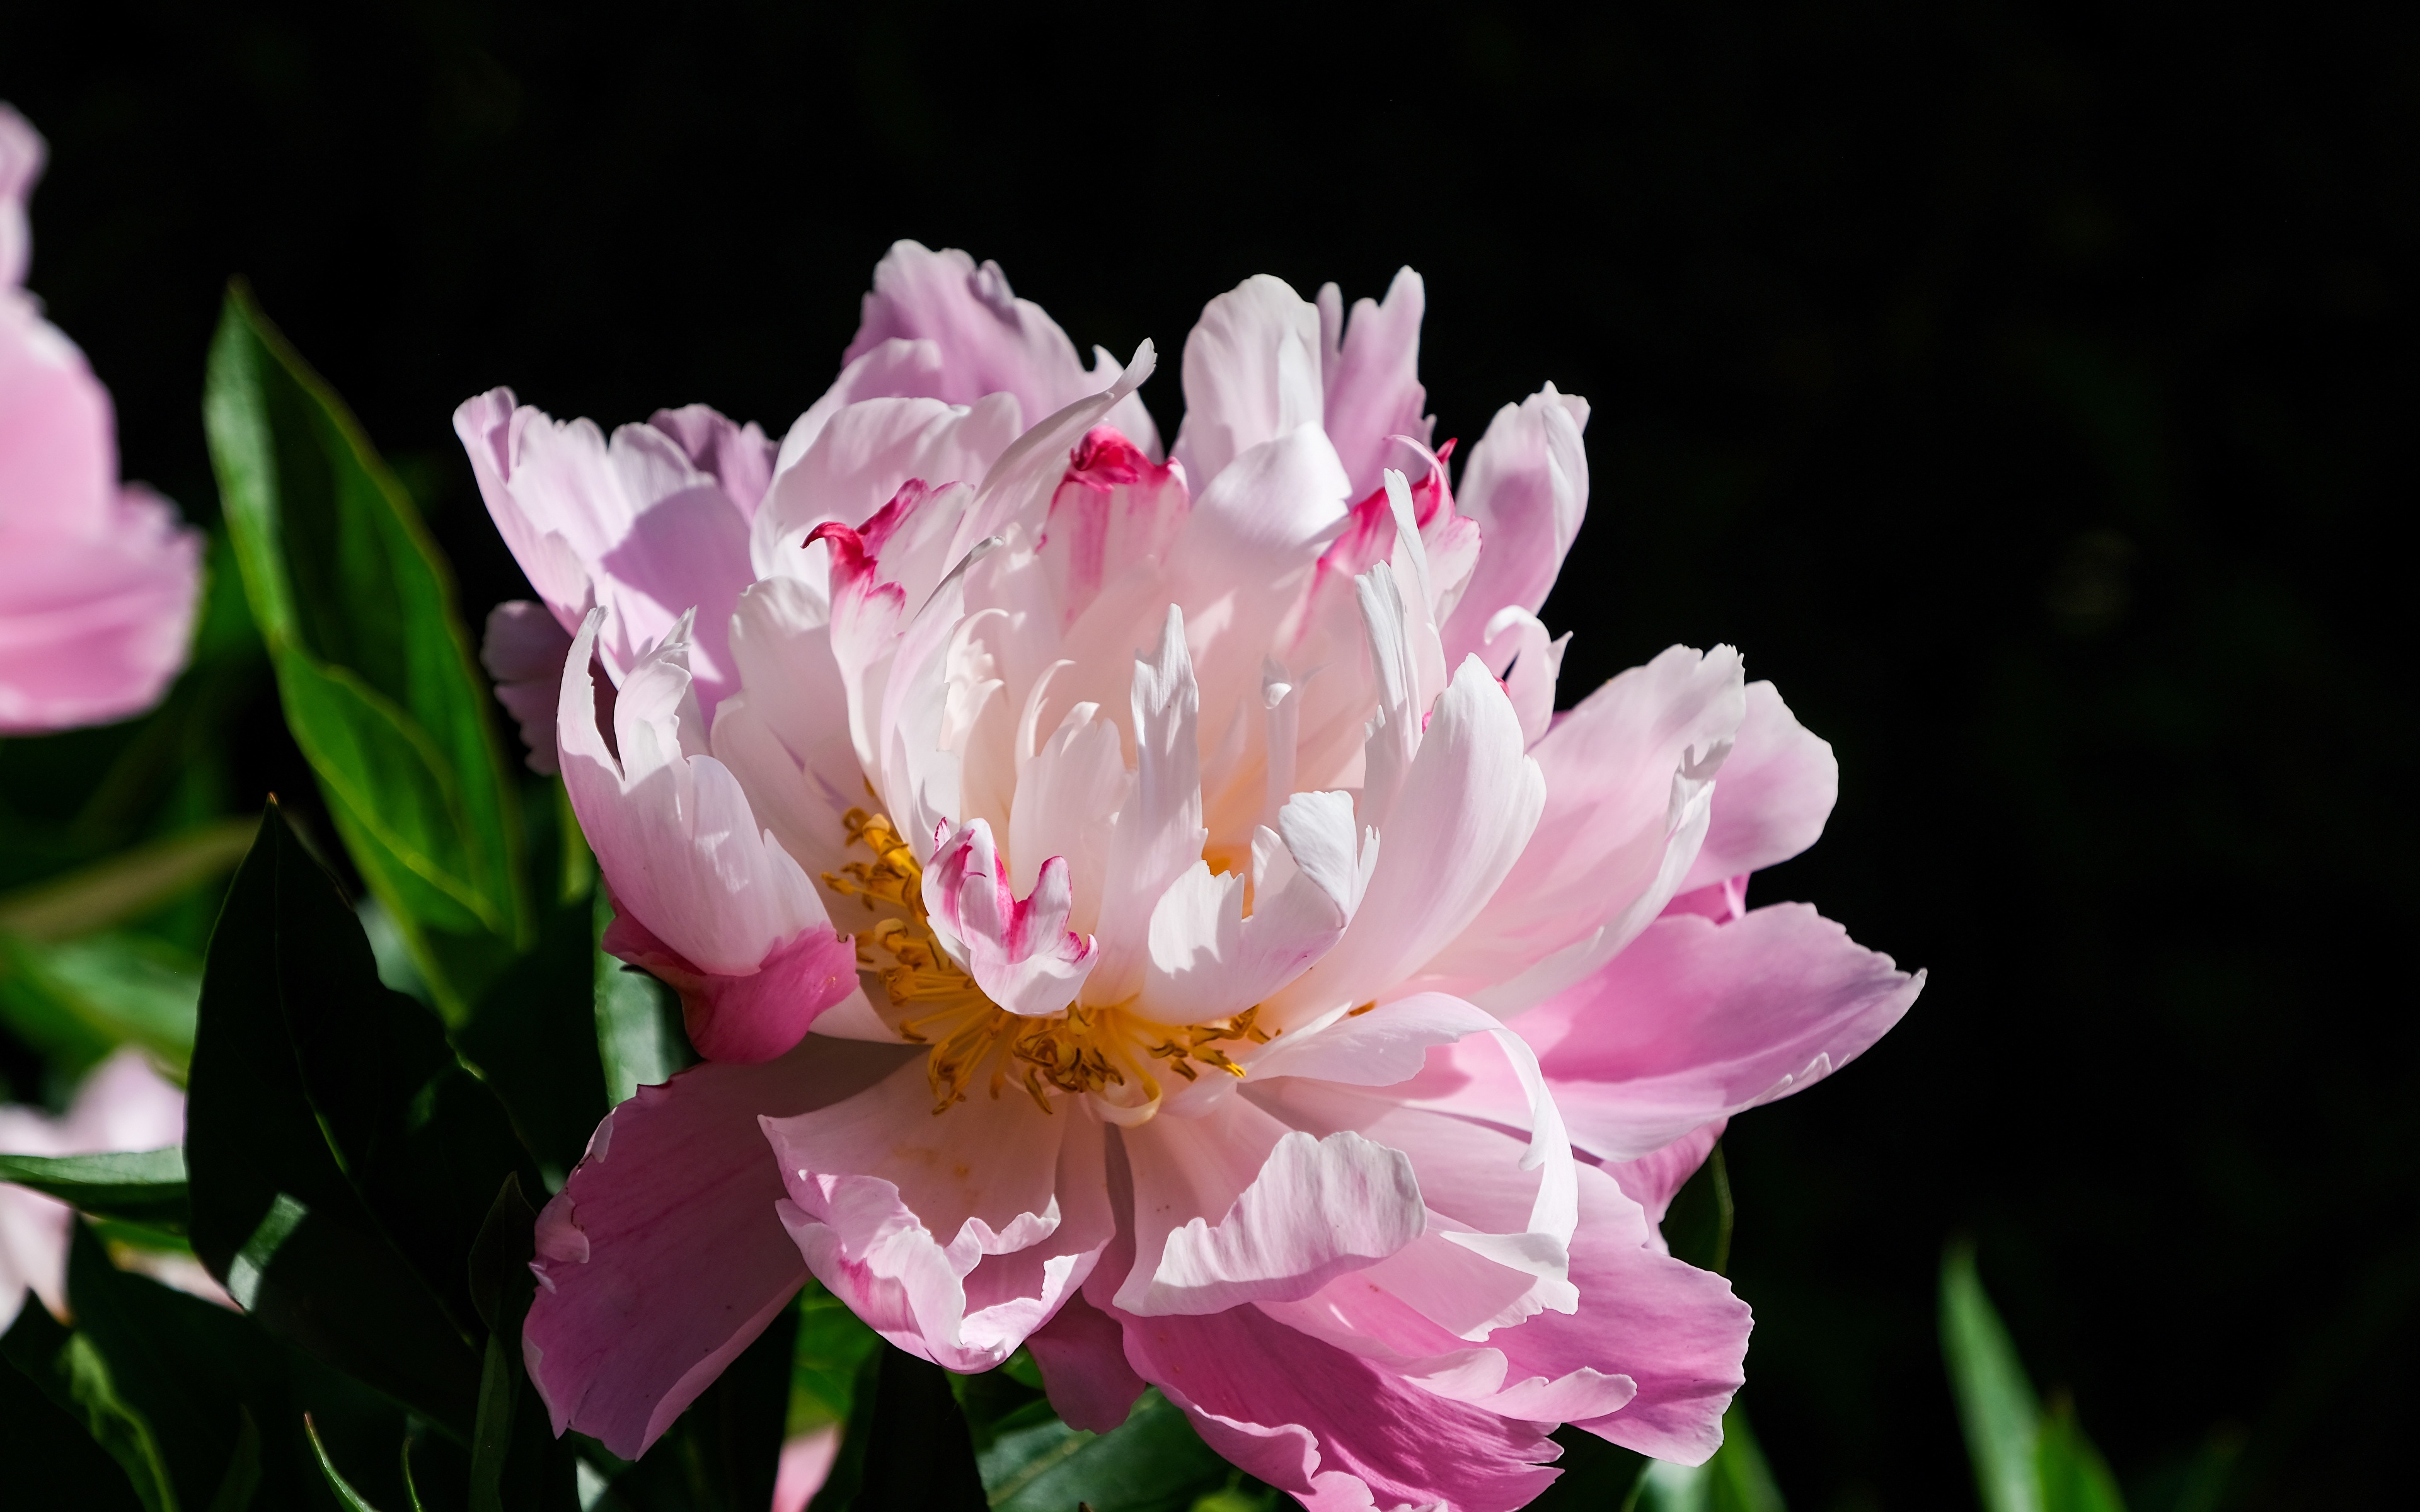 Fotos von Rosa Farbe Blüte Pfingstrosen Großansicht 3840x2400 Blumen hautnah Nahaufnahme